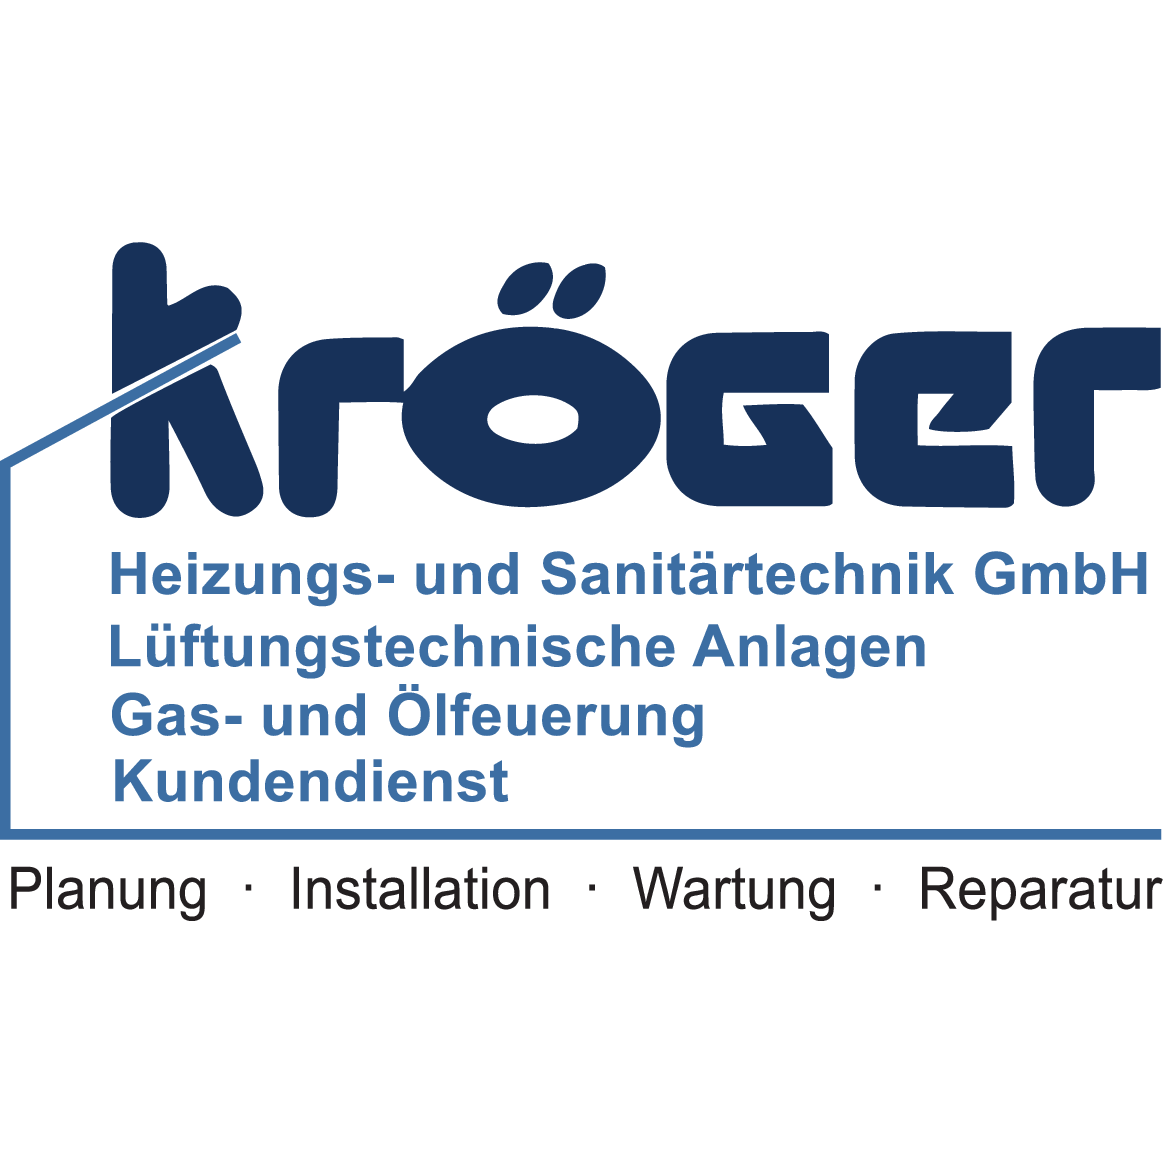 Kröger Heizungs- und Sanitärtechnik GmbH in Berlin